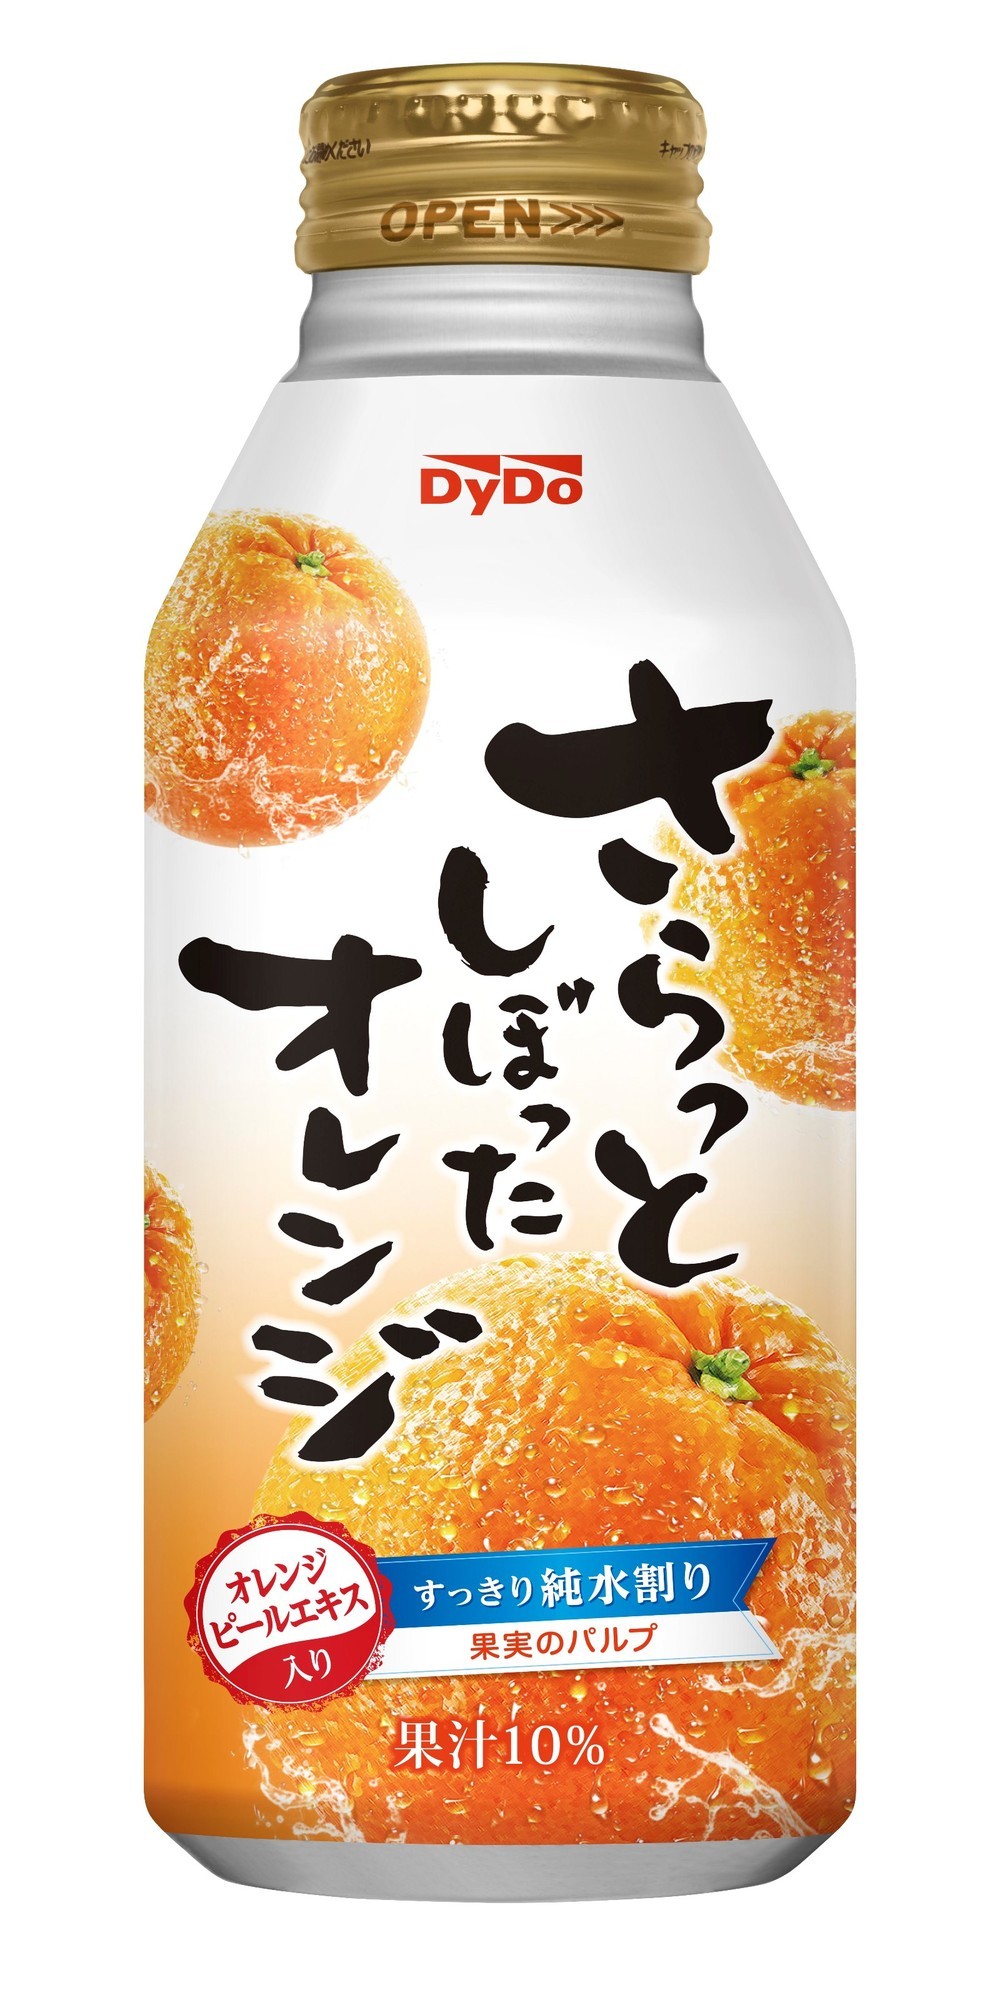 「さらっとしぼったオレンジ」が再栓可能なボトル缶になって新発売